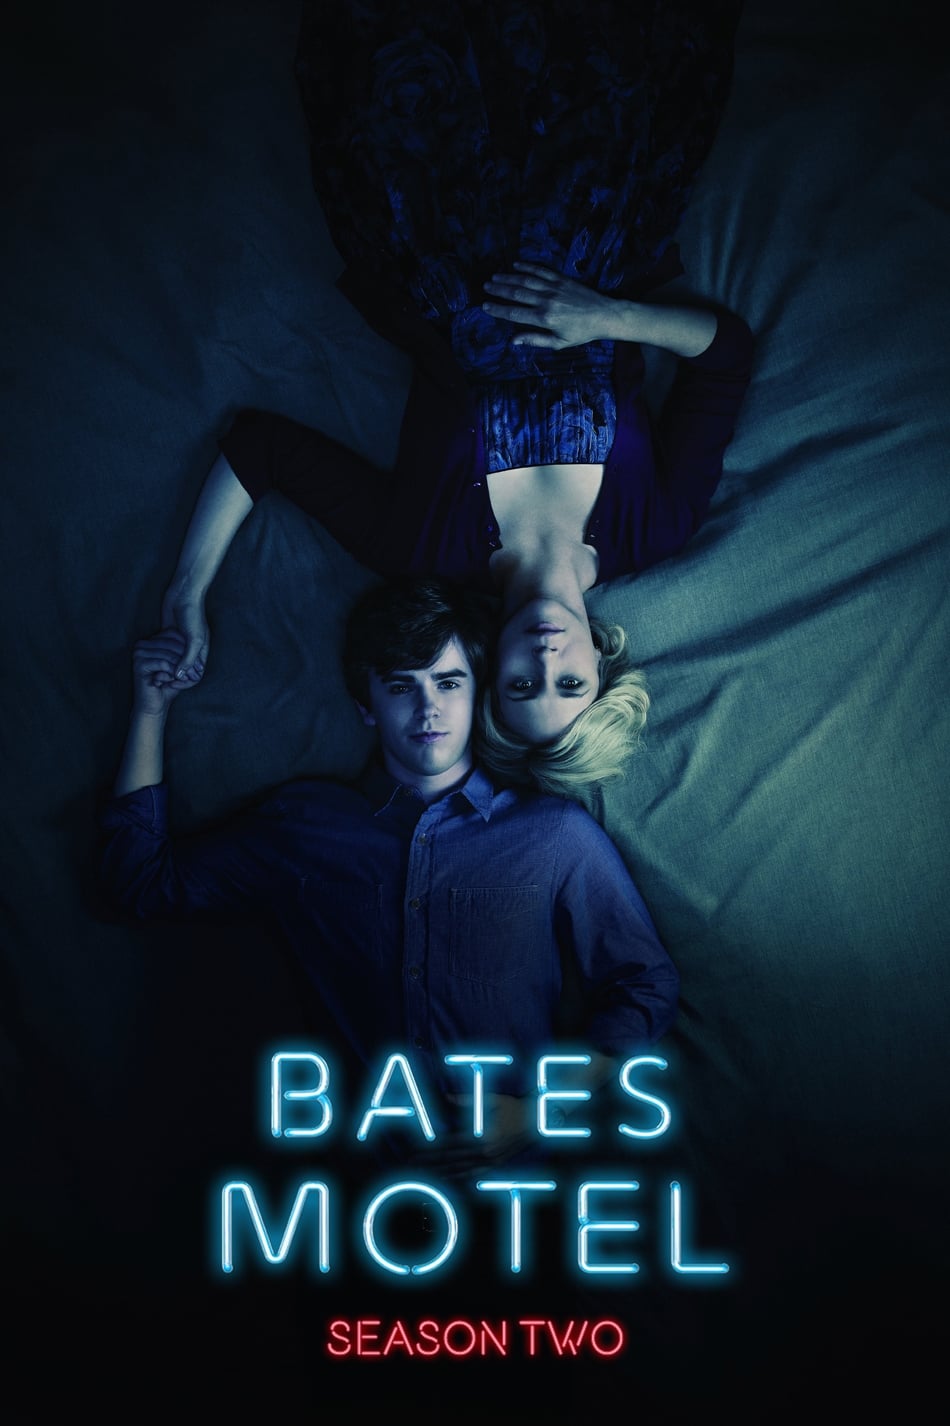 ดูหนังออนไลน์ Bates Motel (2014) Season 2 ซับไทย EP 9 เบส โมเทล ปี2 ตอนที่9 (ซับไทย)